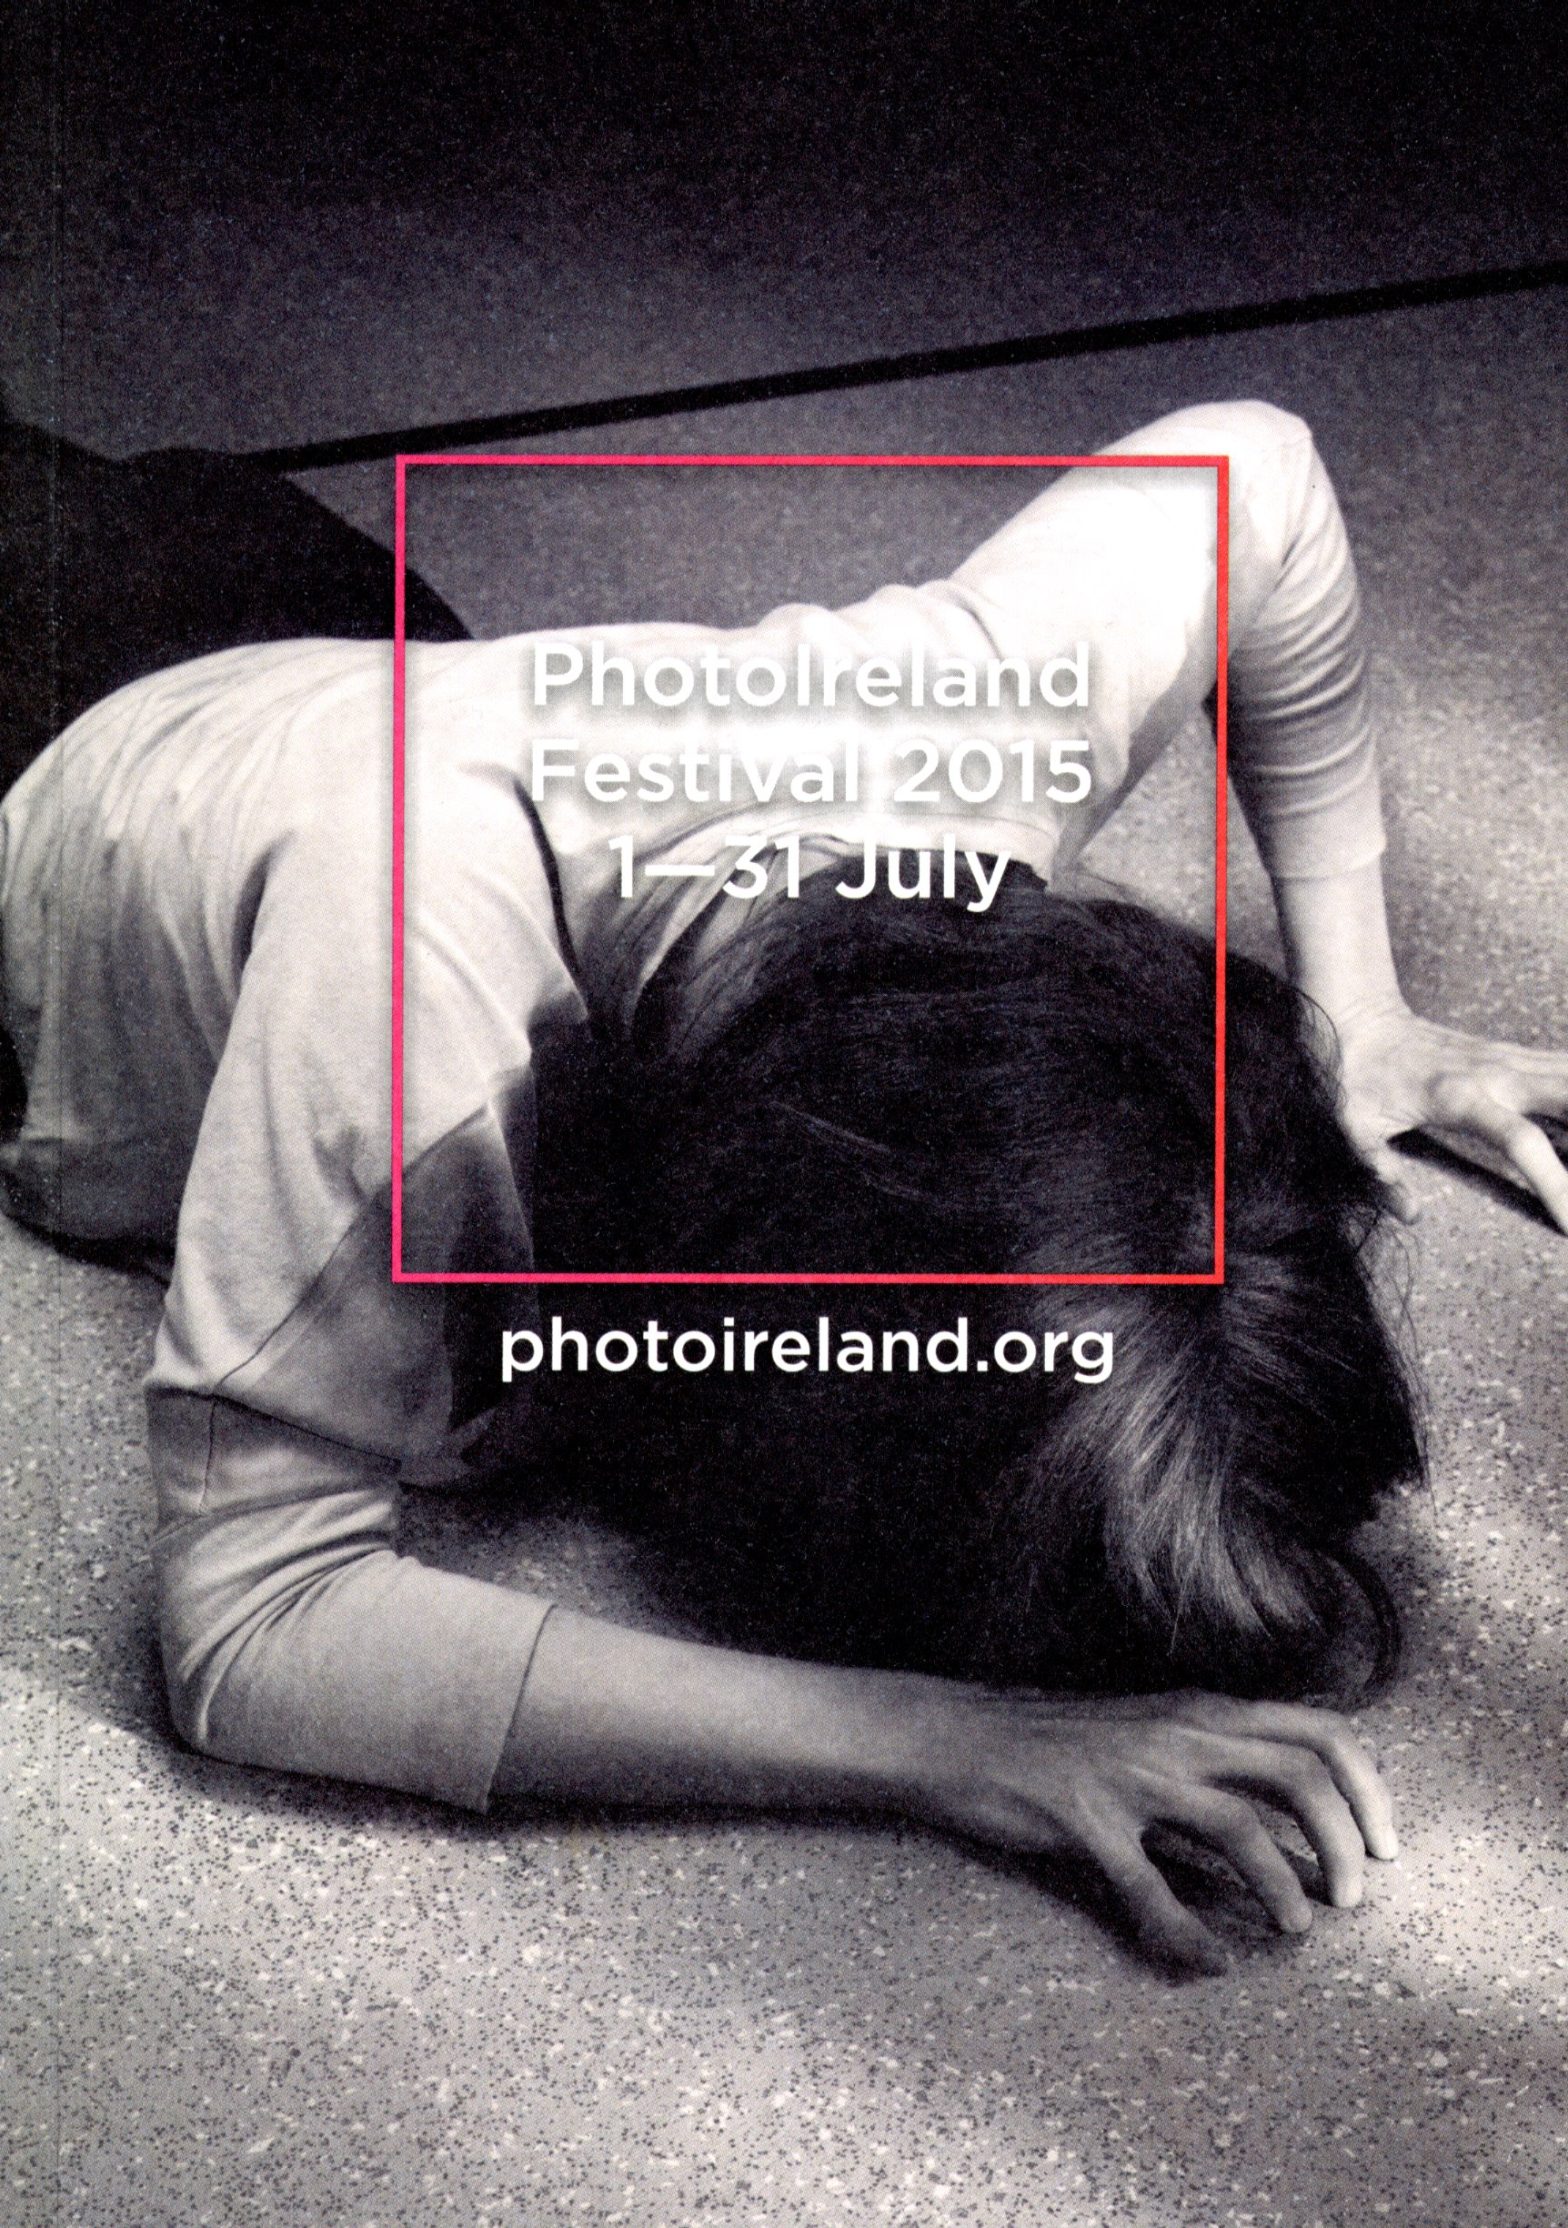 PhotoIreland Festival 2015: 1 – 31 July PhotoIreland